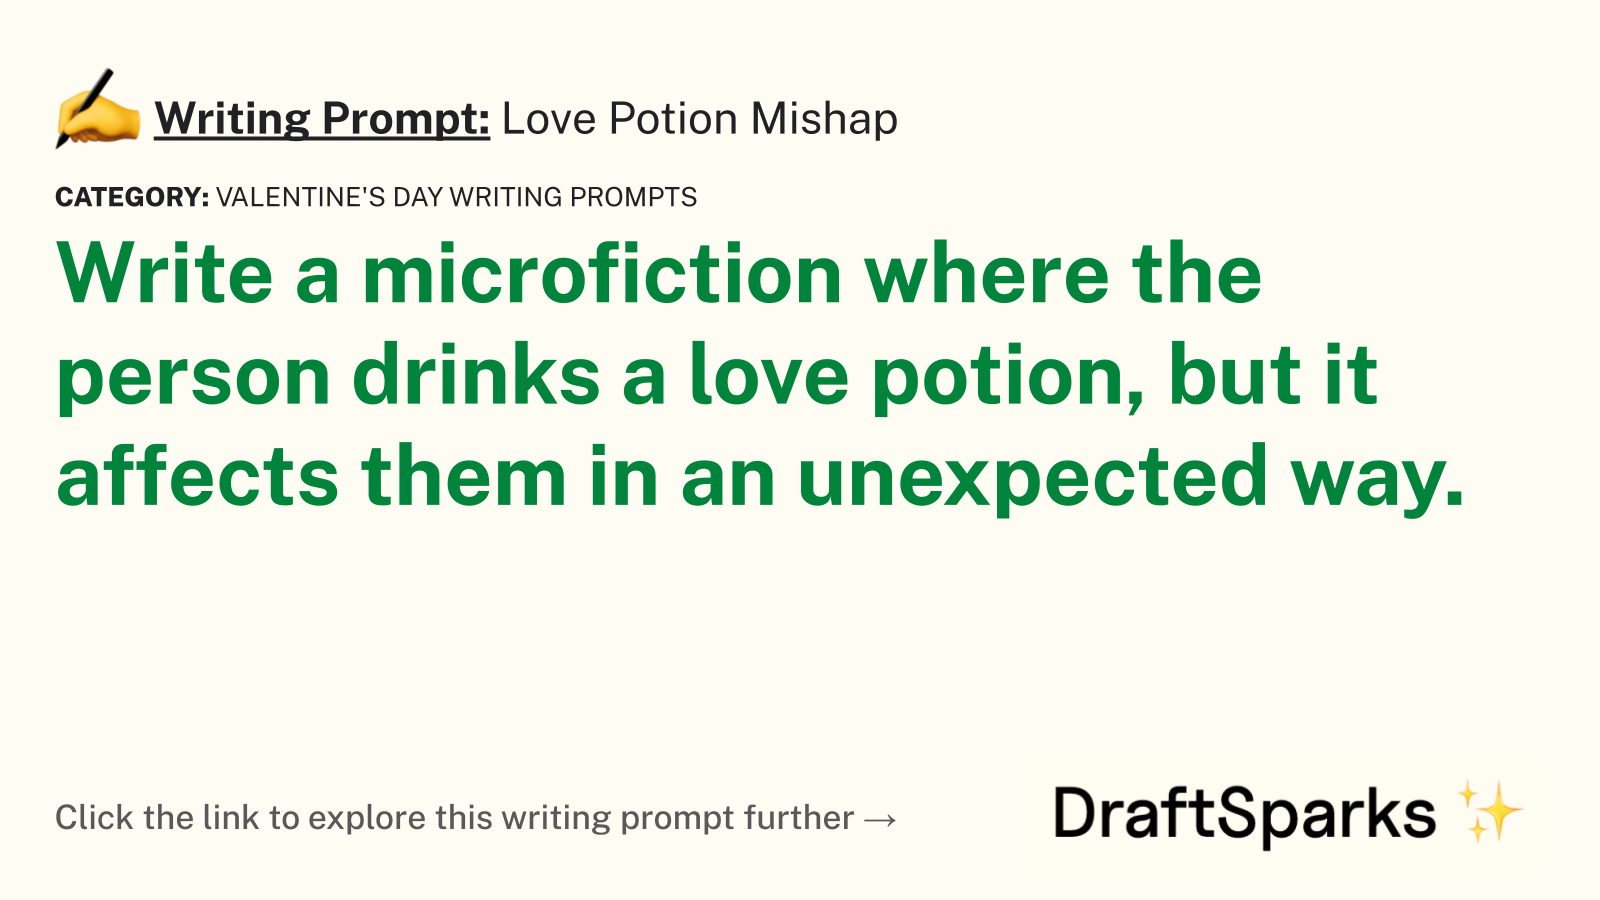 Love Potion Mishap